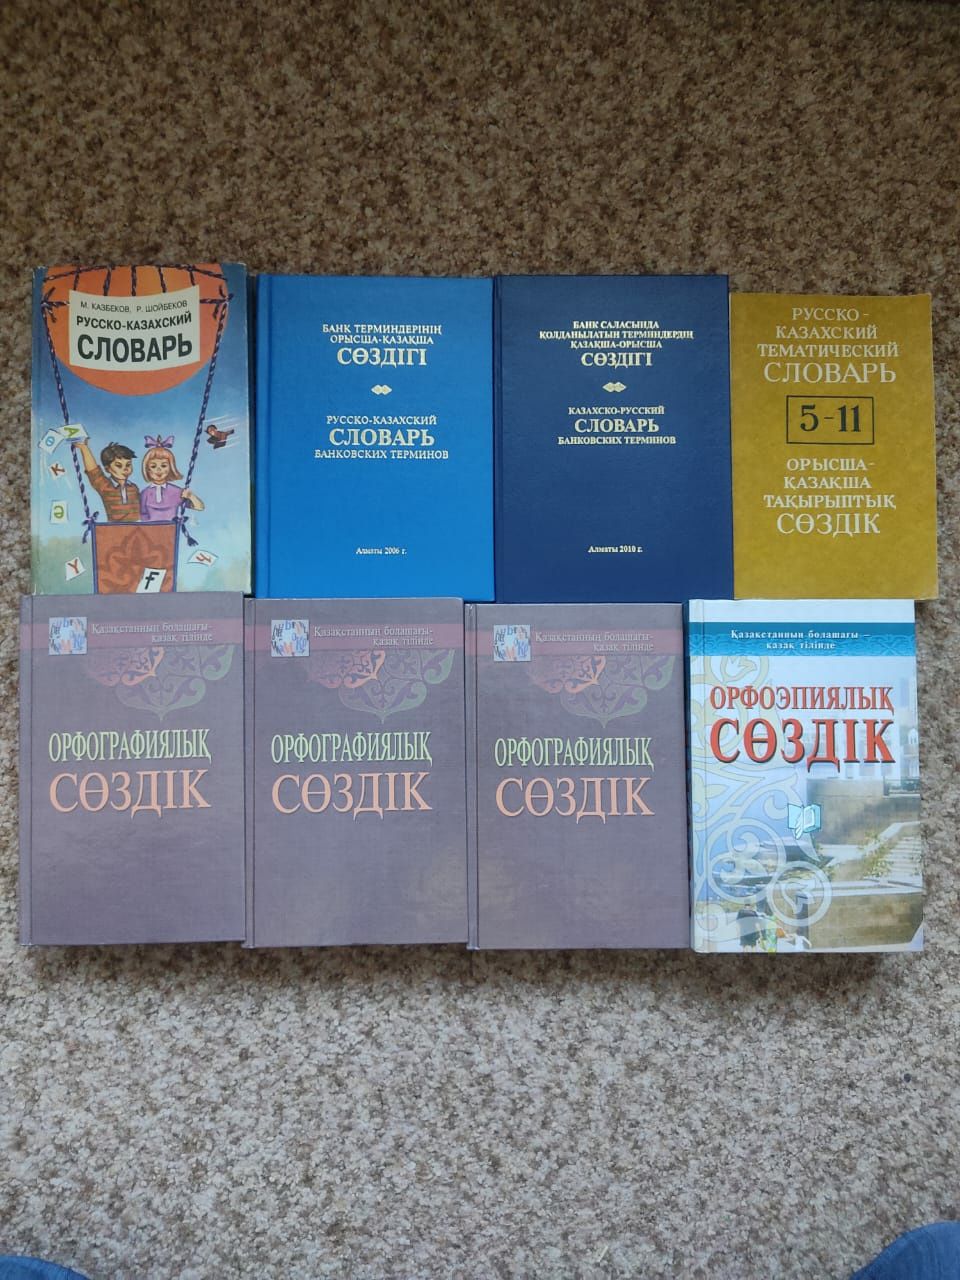 Продам словари по казахскому языку